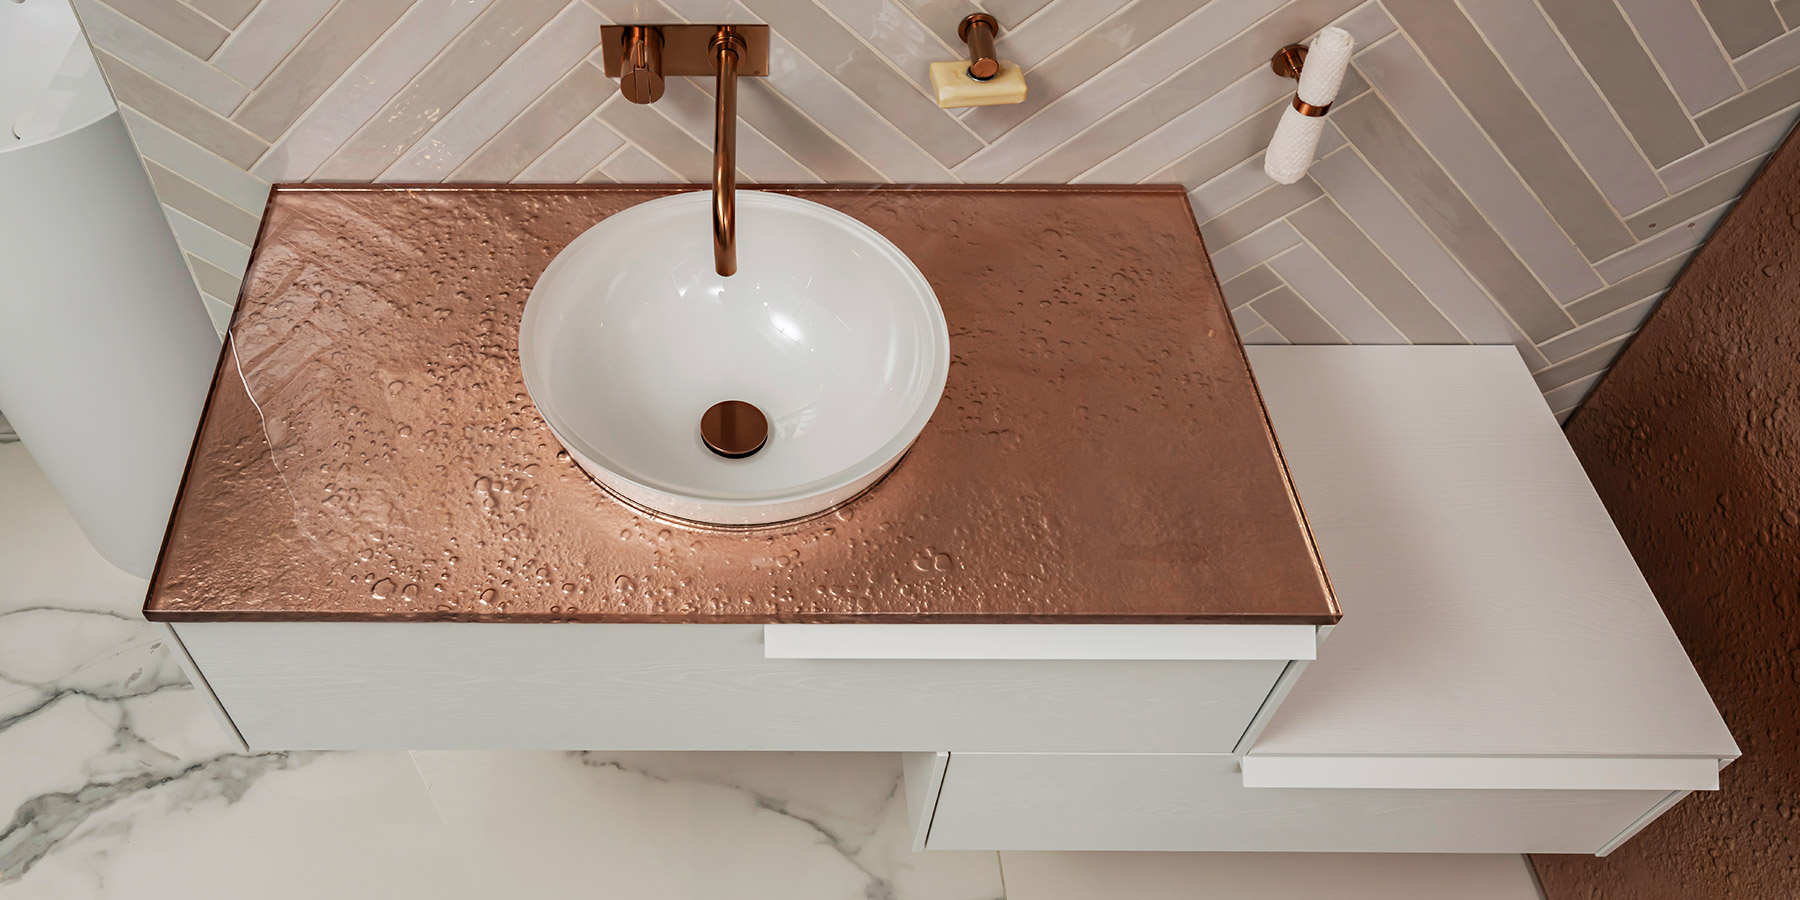 Brass-look bathroom countertop with vessel sink